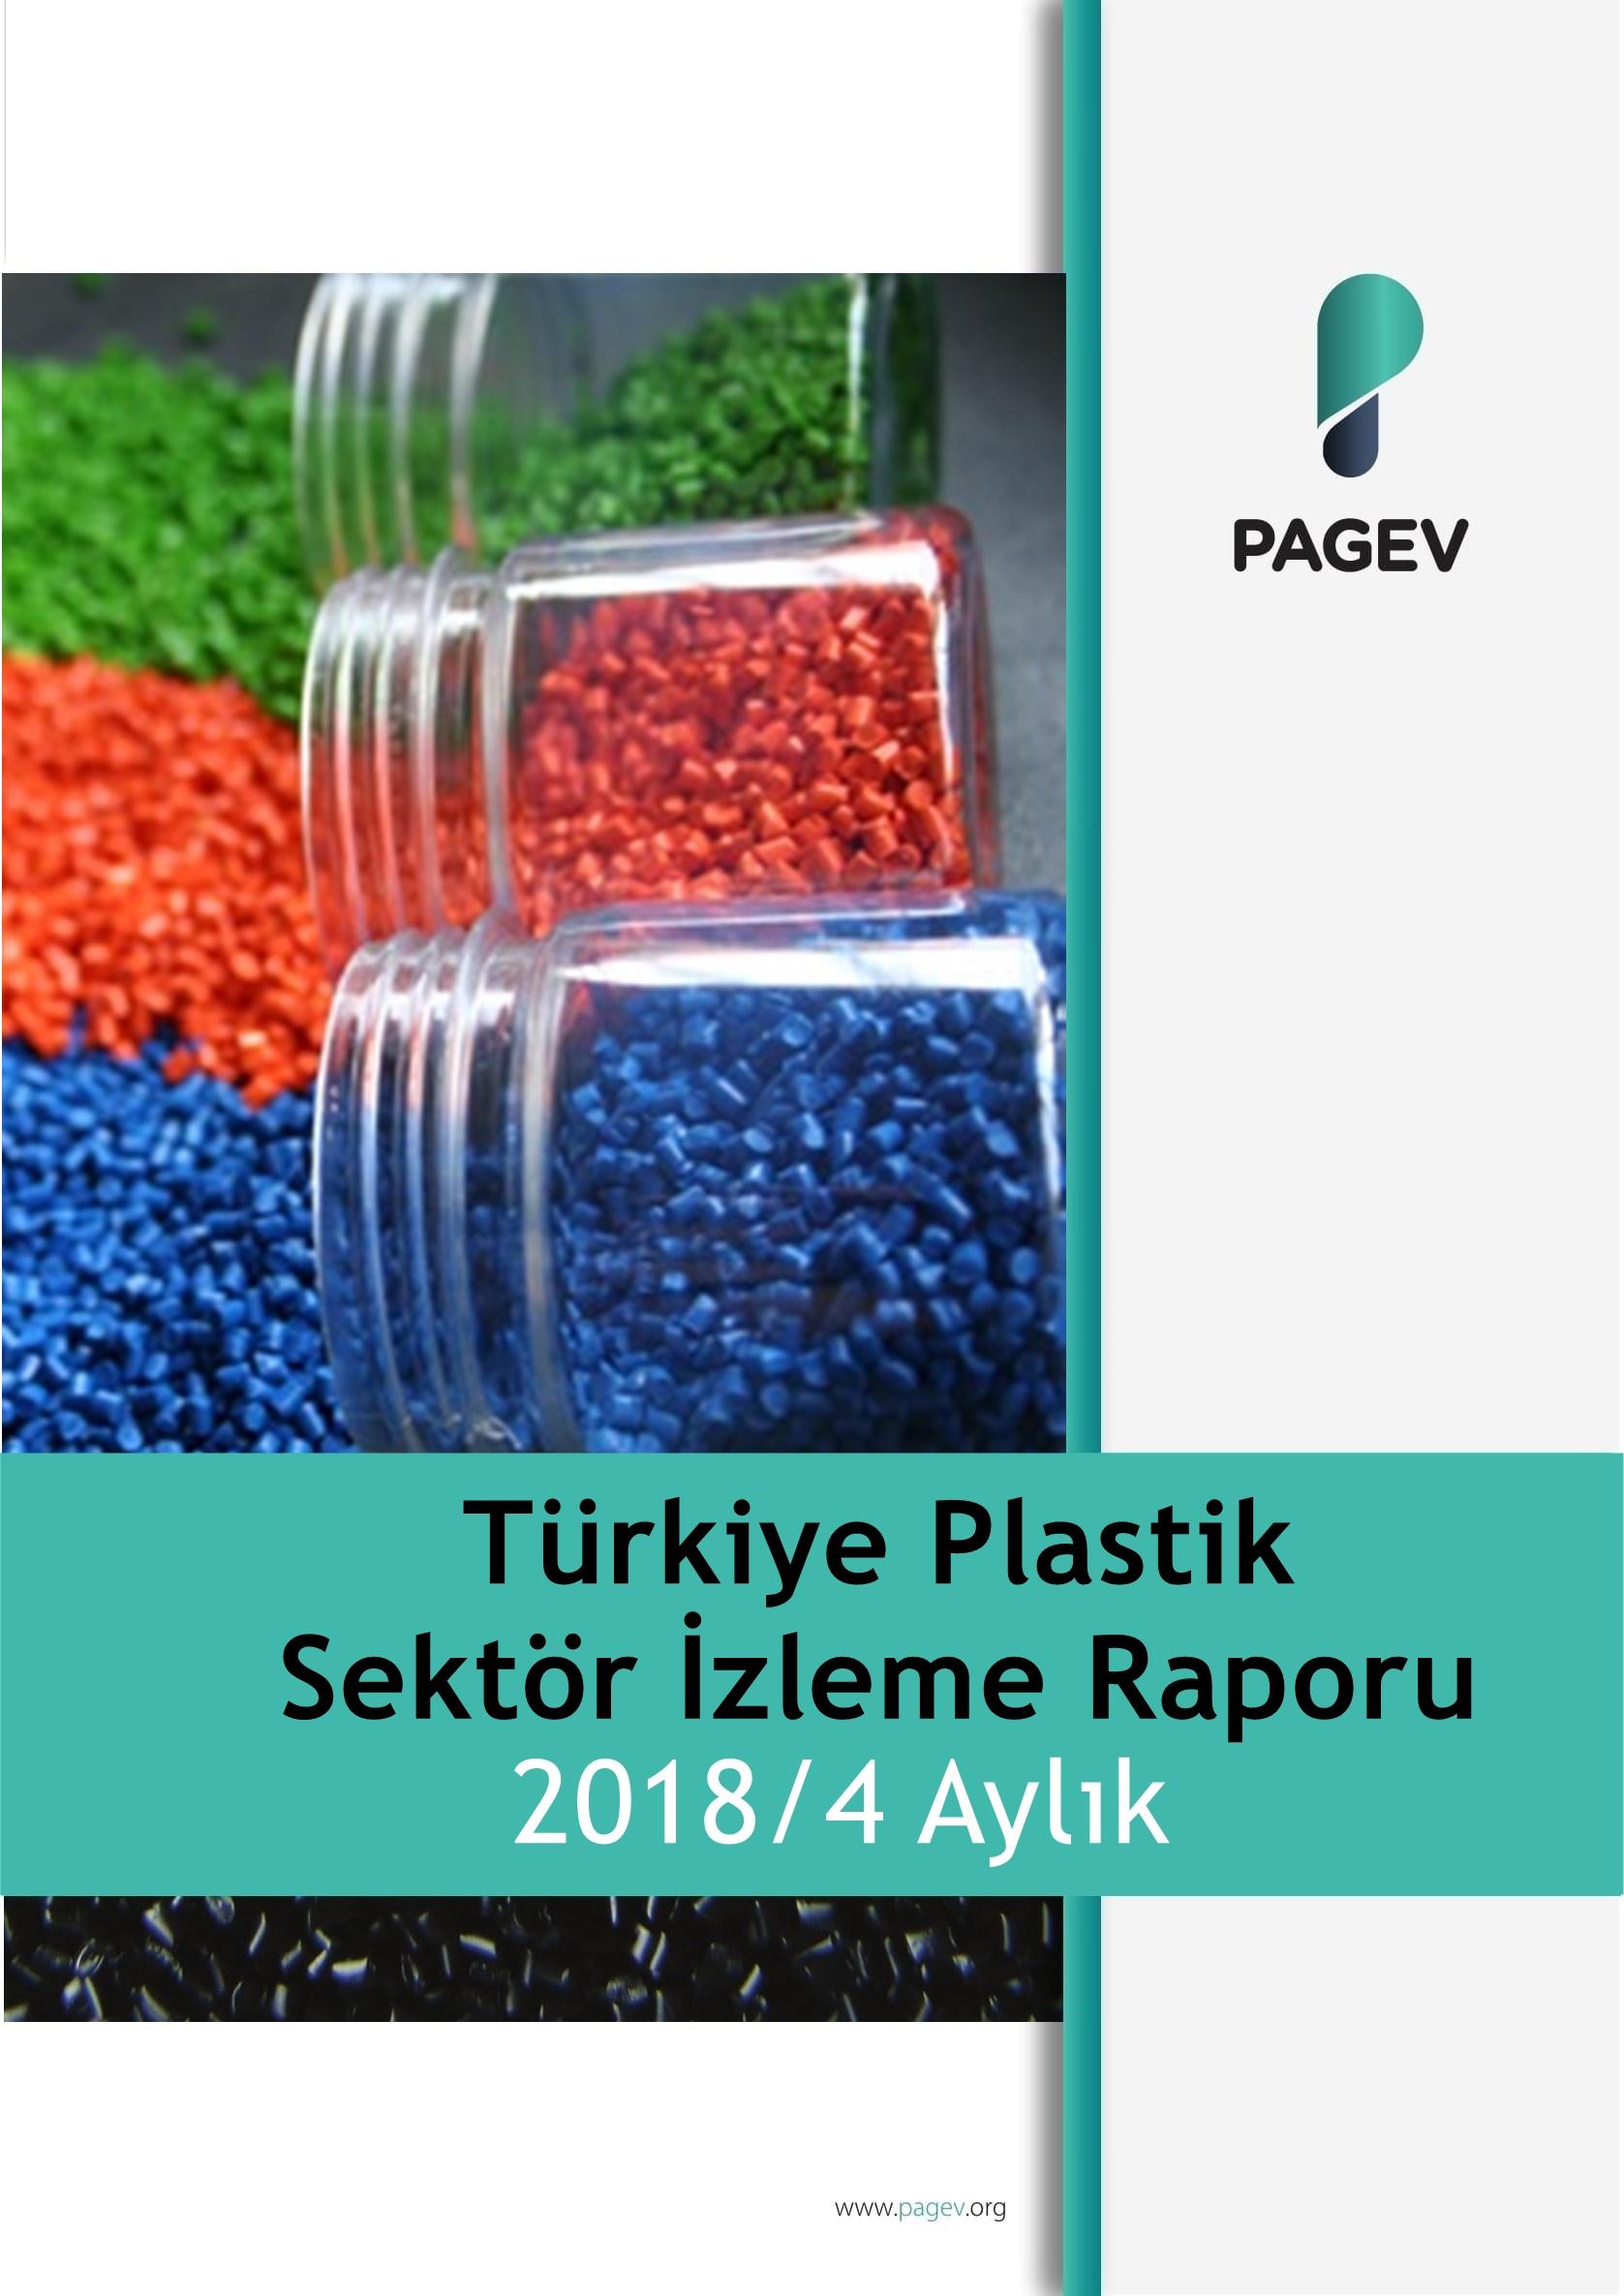 Türkiye Plastik Sektör İzleme Raporu 2018/4 Aylık